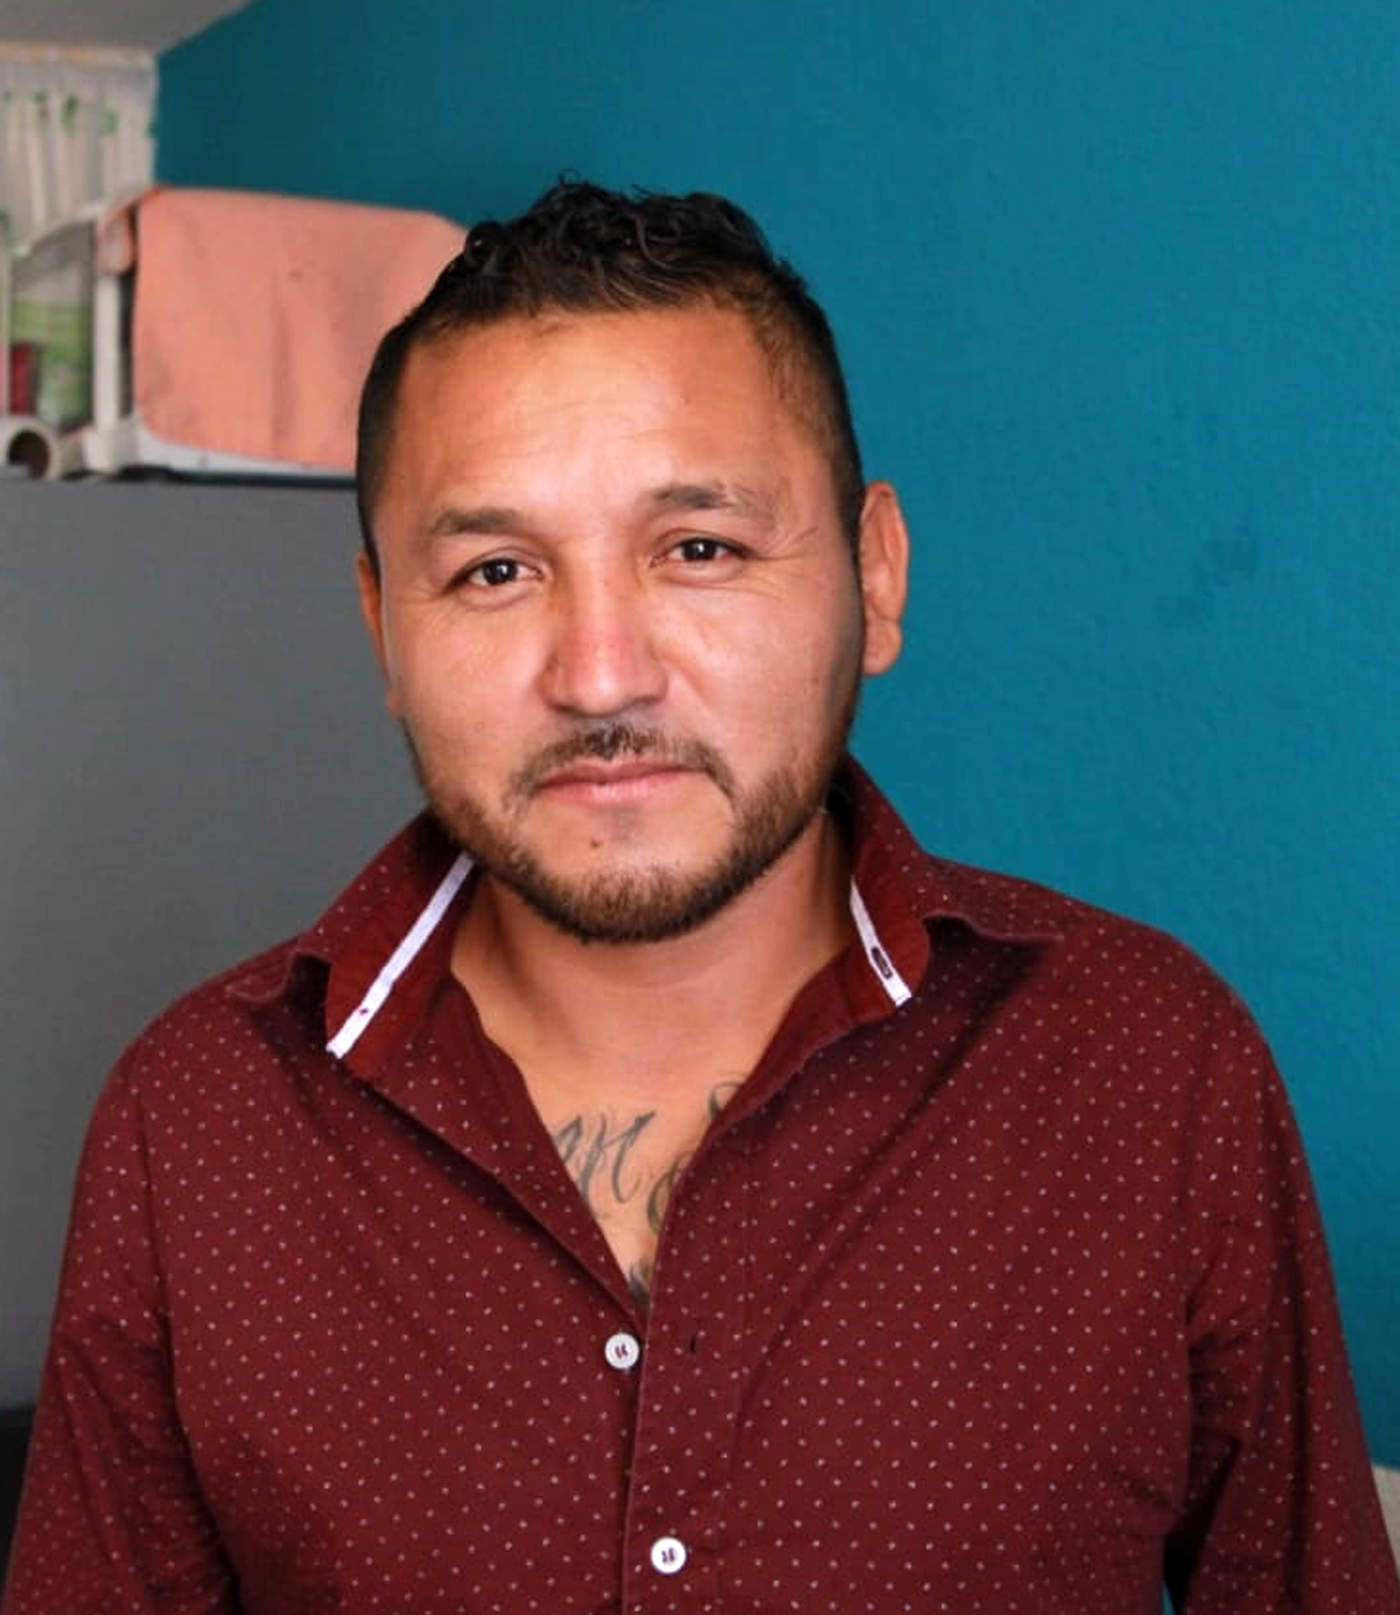 El Gobierno del estado mexicano de San Luis Potosí informó este martes que evalúa aumentar la seguridad del diputado local Pedro Carrizales, apodado 'el Mijis', luego de que anoche sufriera un ataque a balazos del que salió ileso. (EL UNIVERSAL)